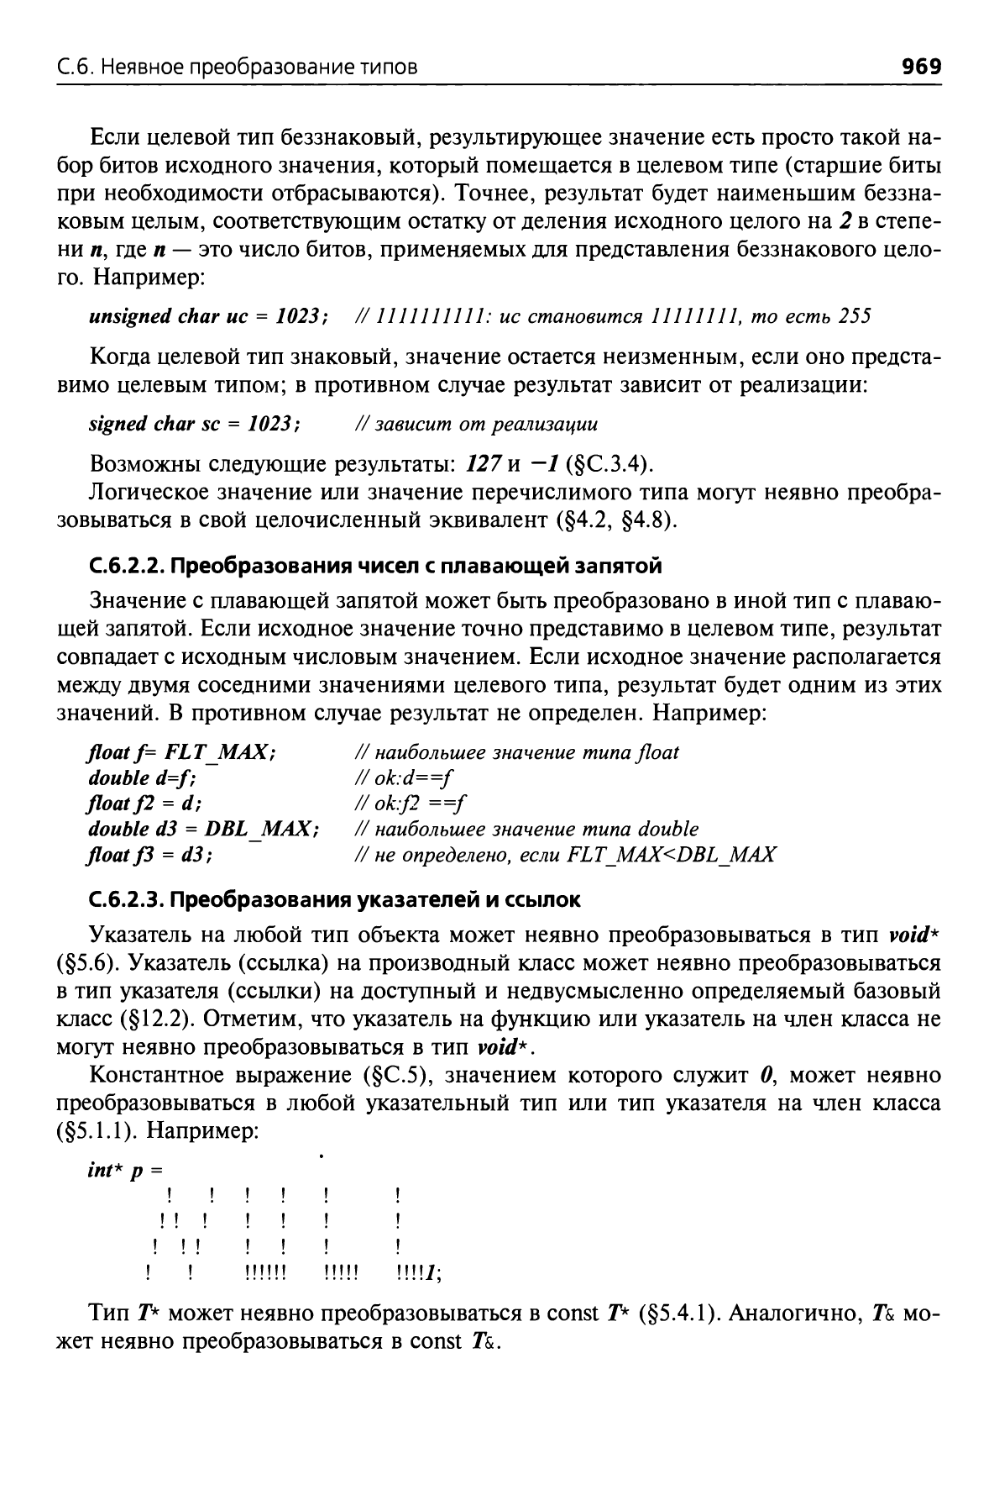 С.6.2.2. Преобразования чисел с плавающей запятой
С.6.2.3. Преобразования указателей и ссылок